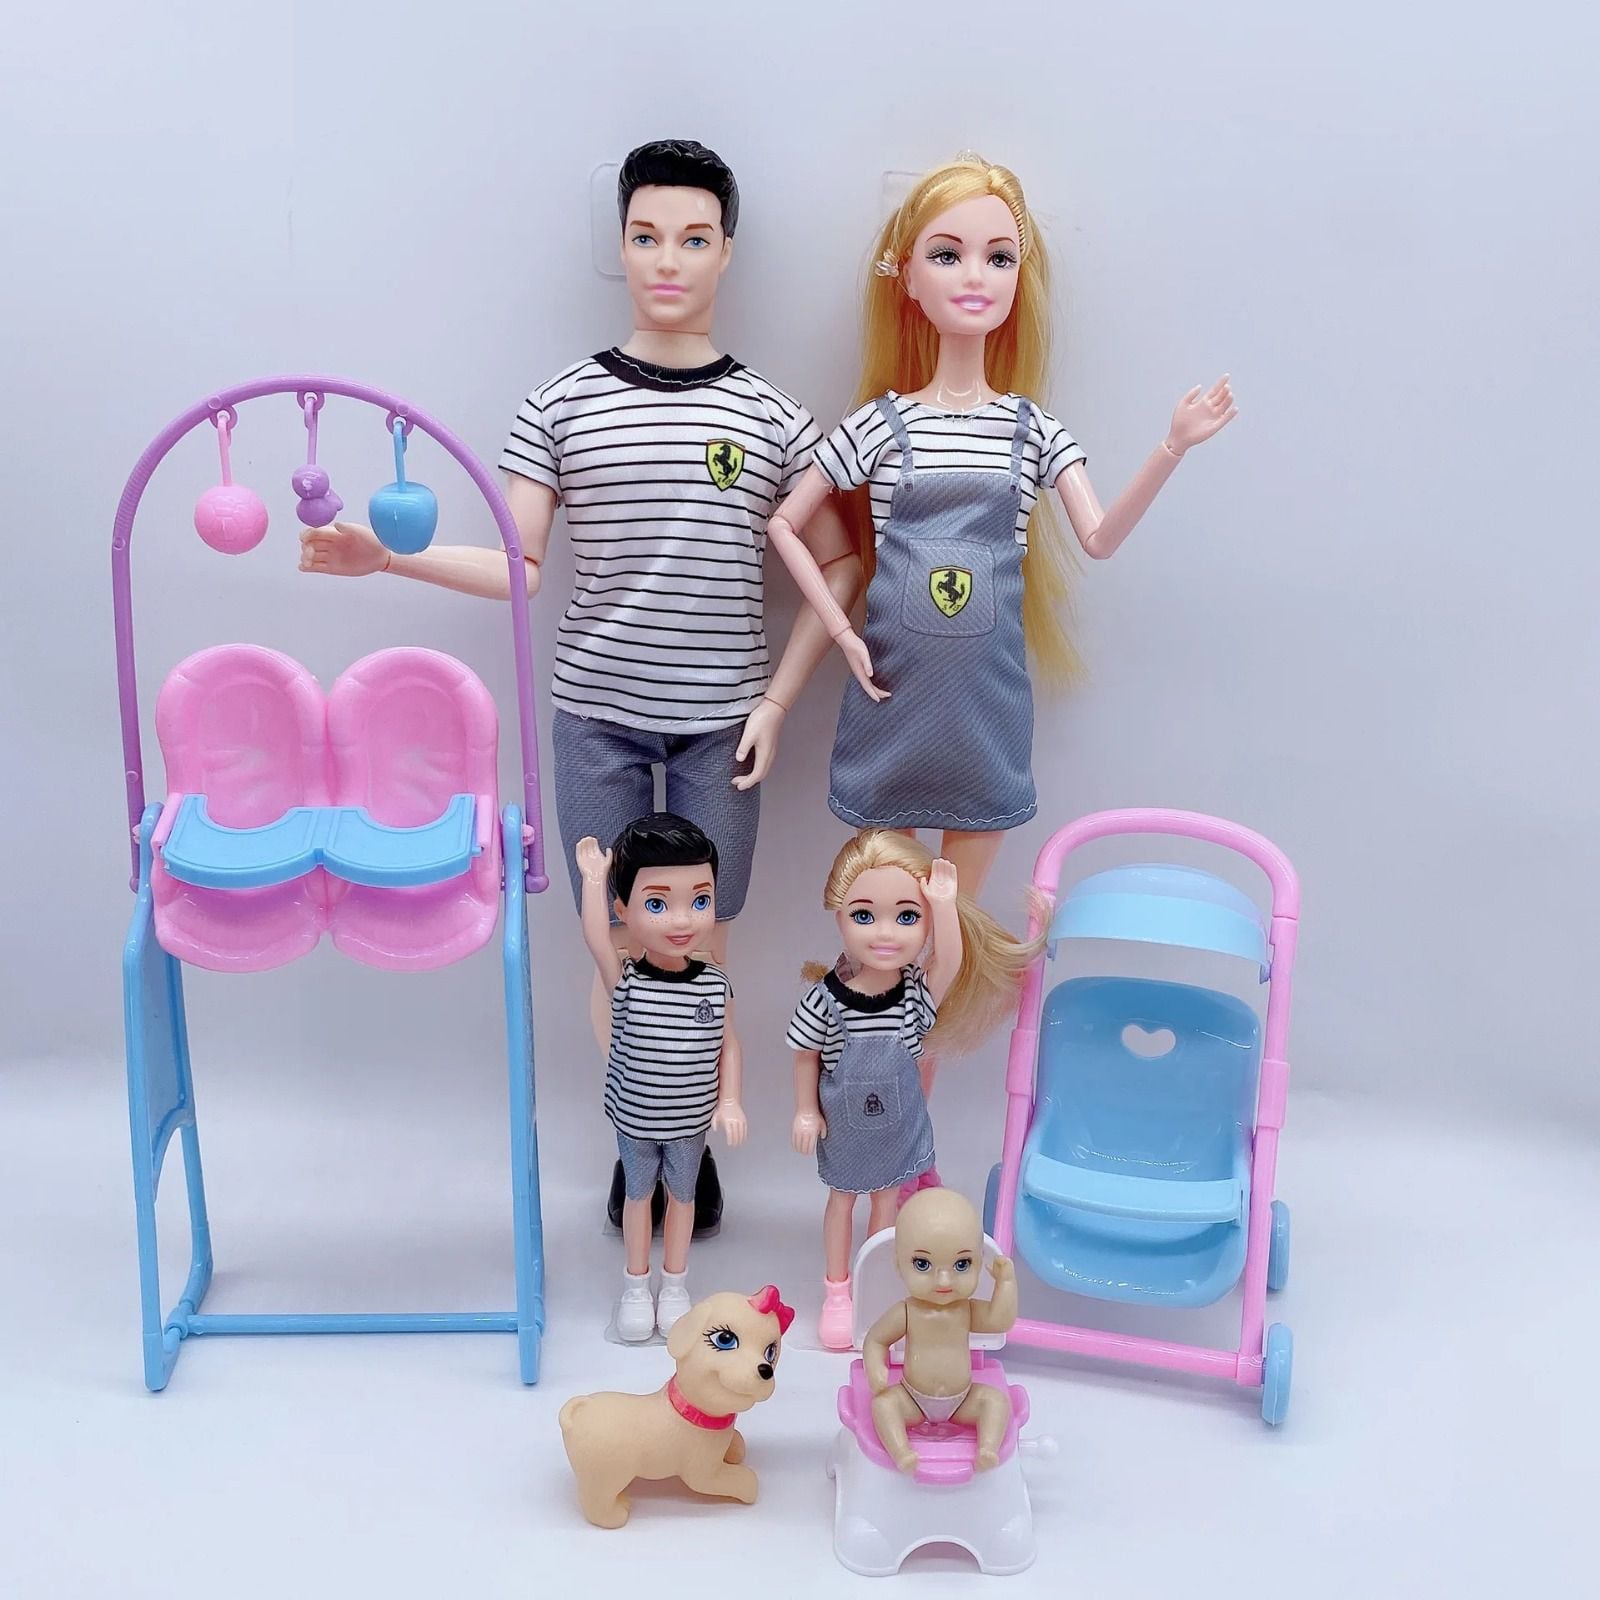 El Kit de Barbie mamá en AliExpress